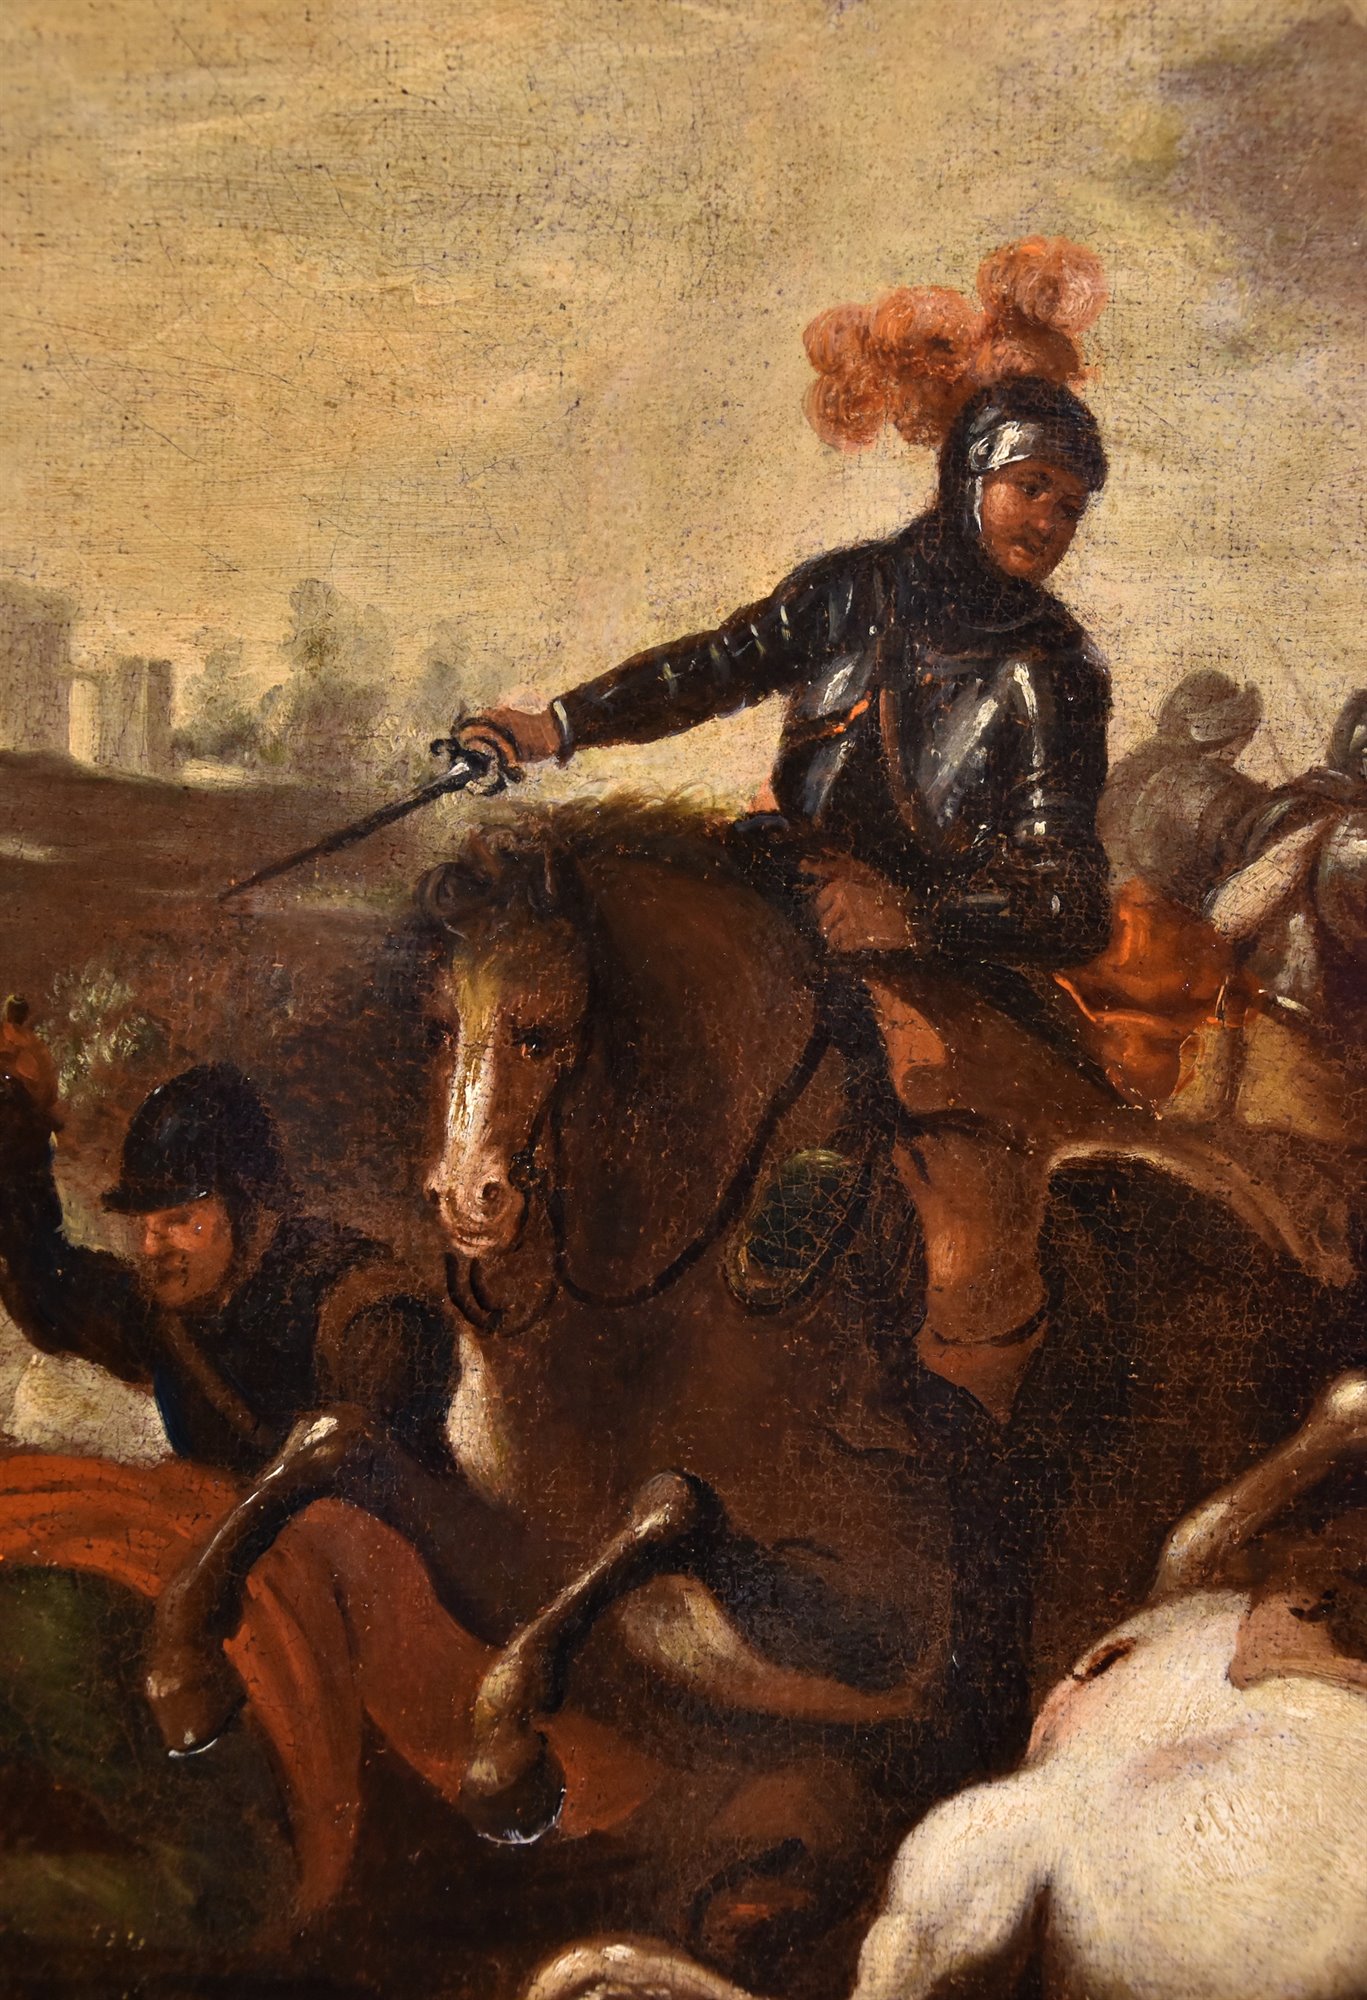 Battaglia tra cavalieri Turchi e Cristiani